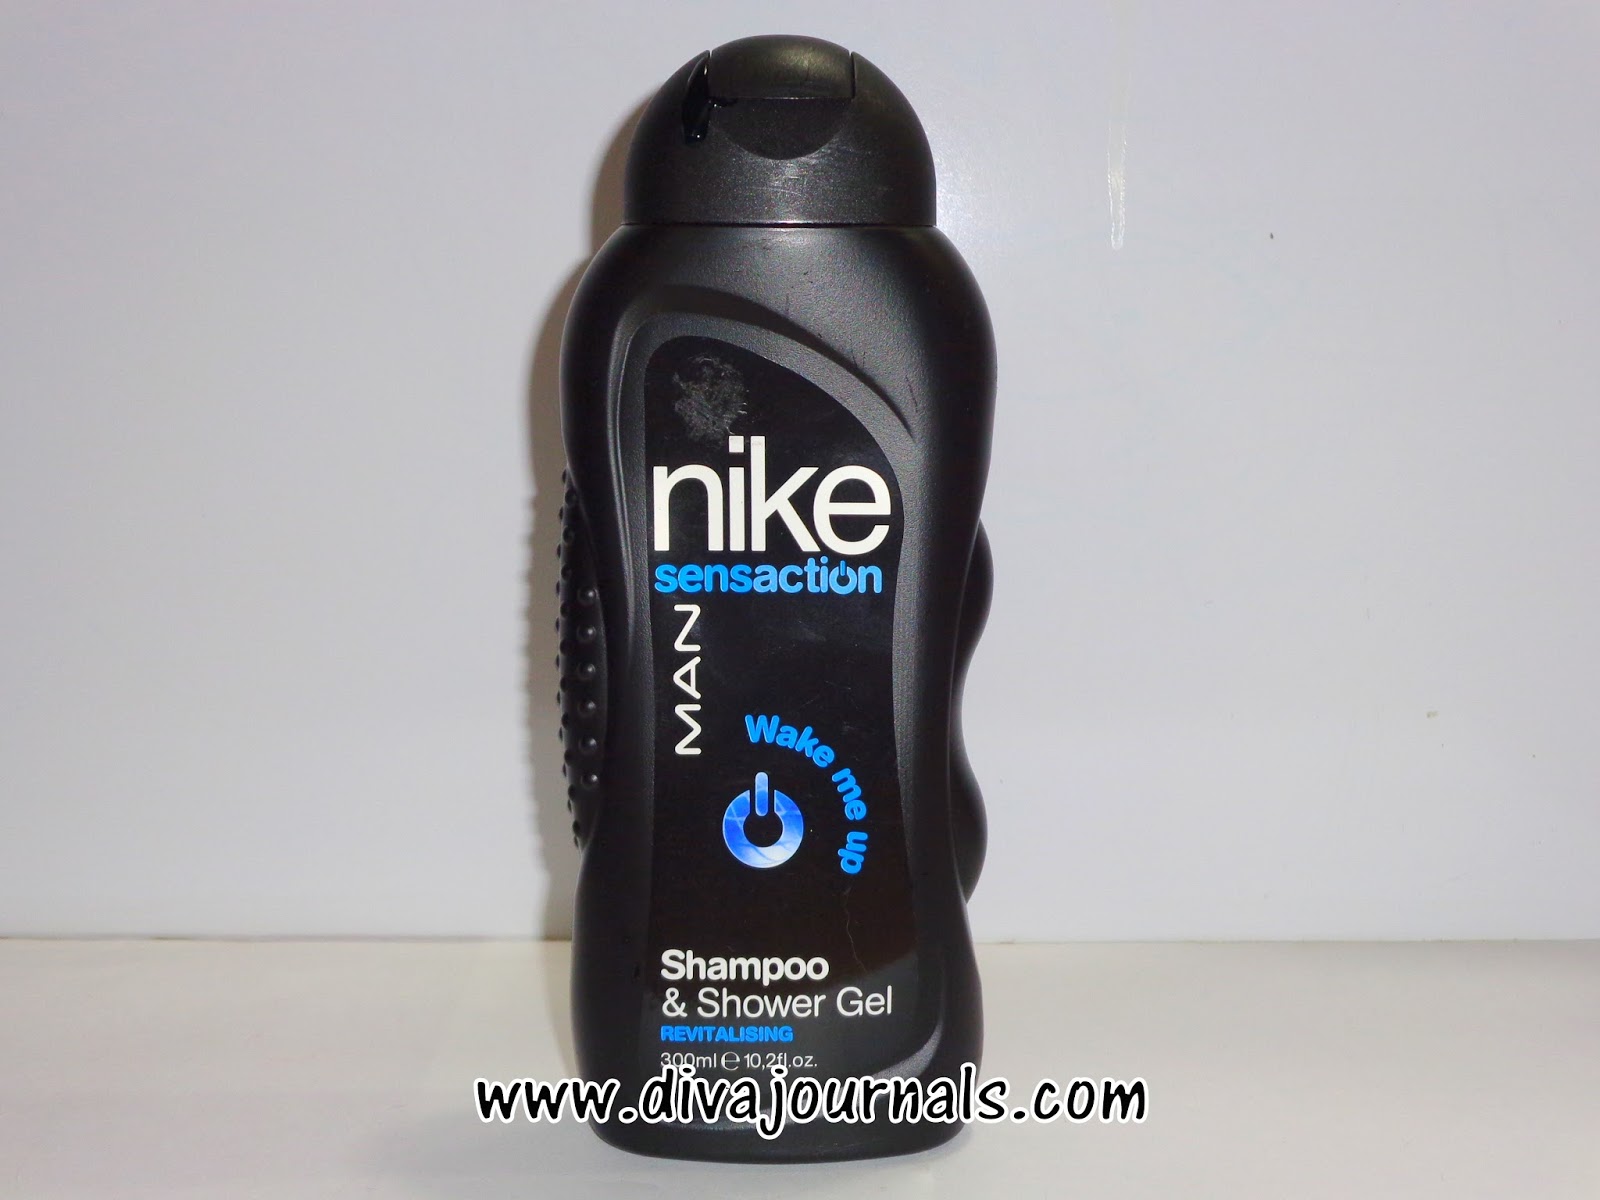 más lejos al menos conversión Nike Sensaction Man Wake me up Shampoo & Shower Gel Review